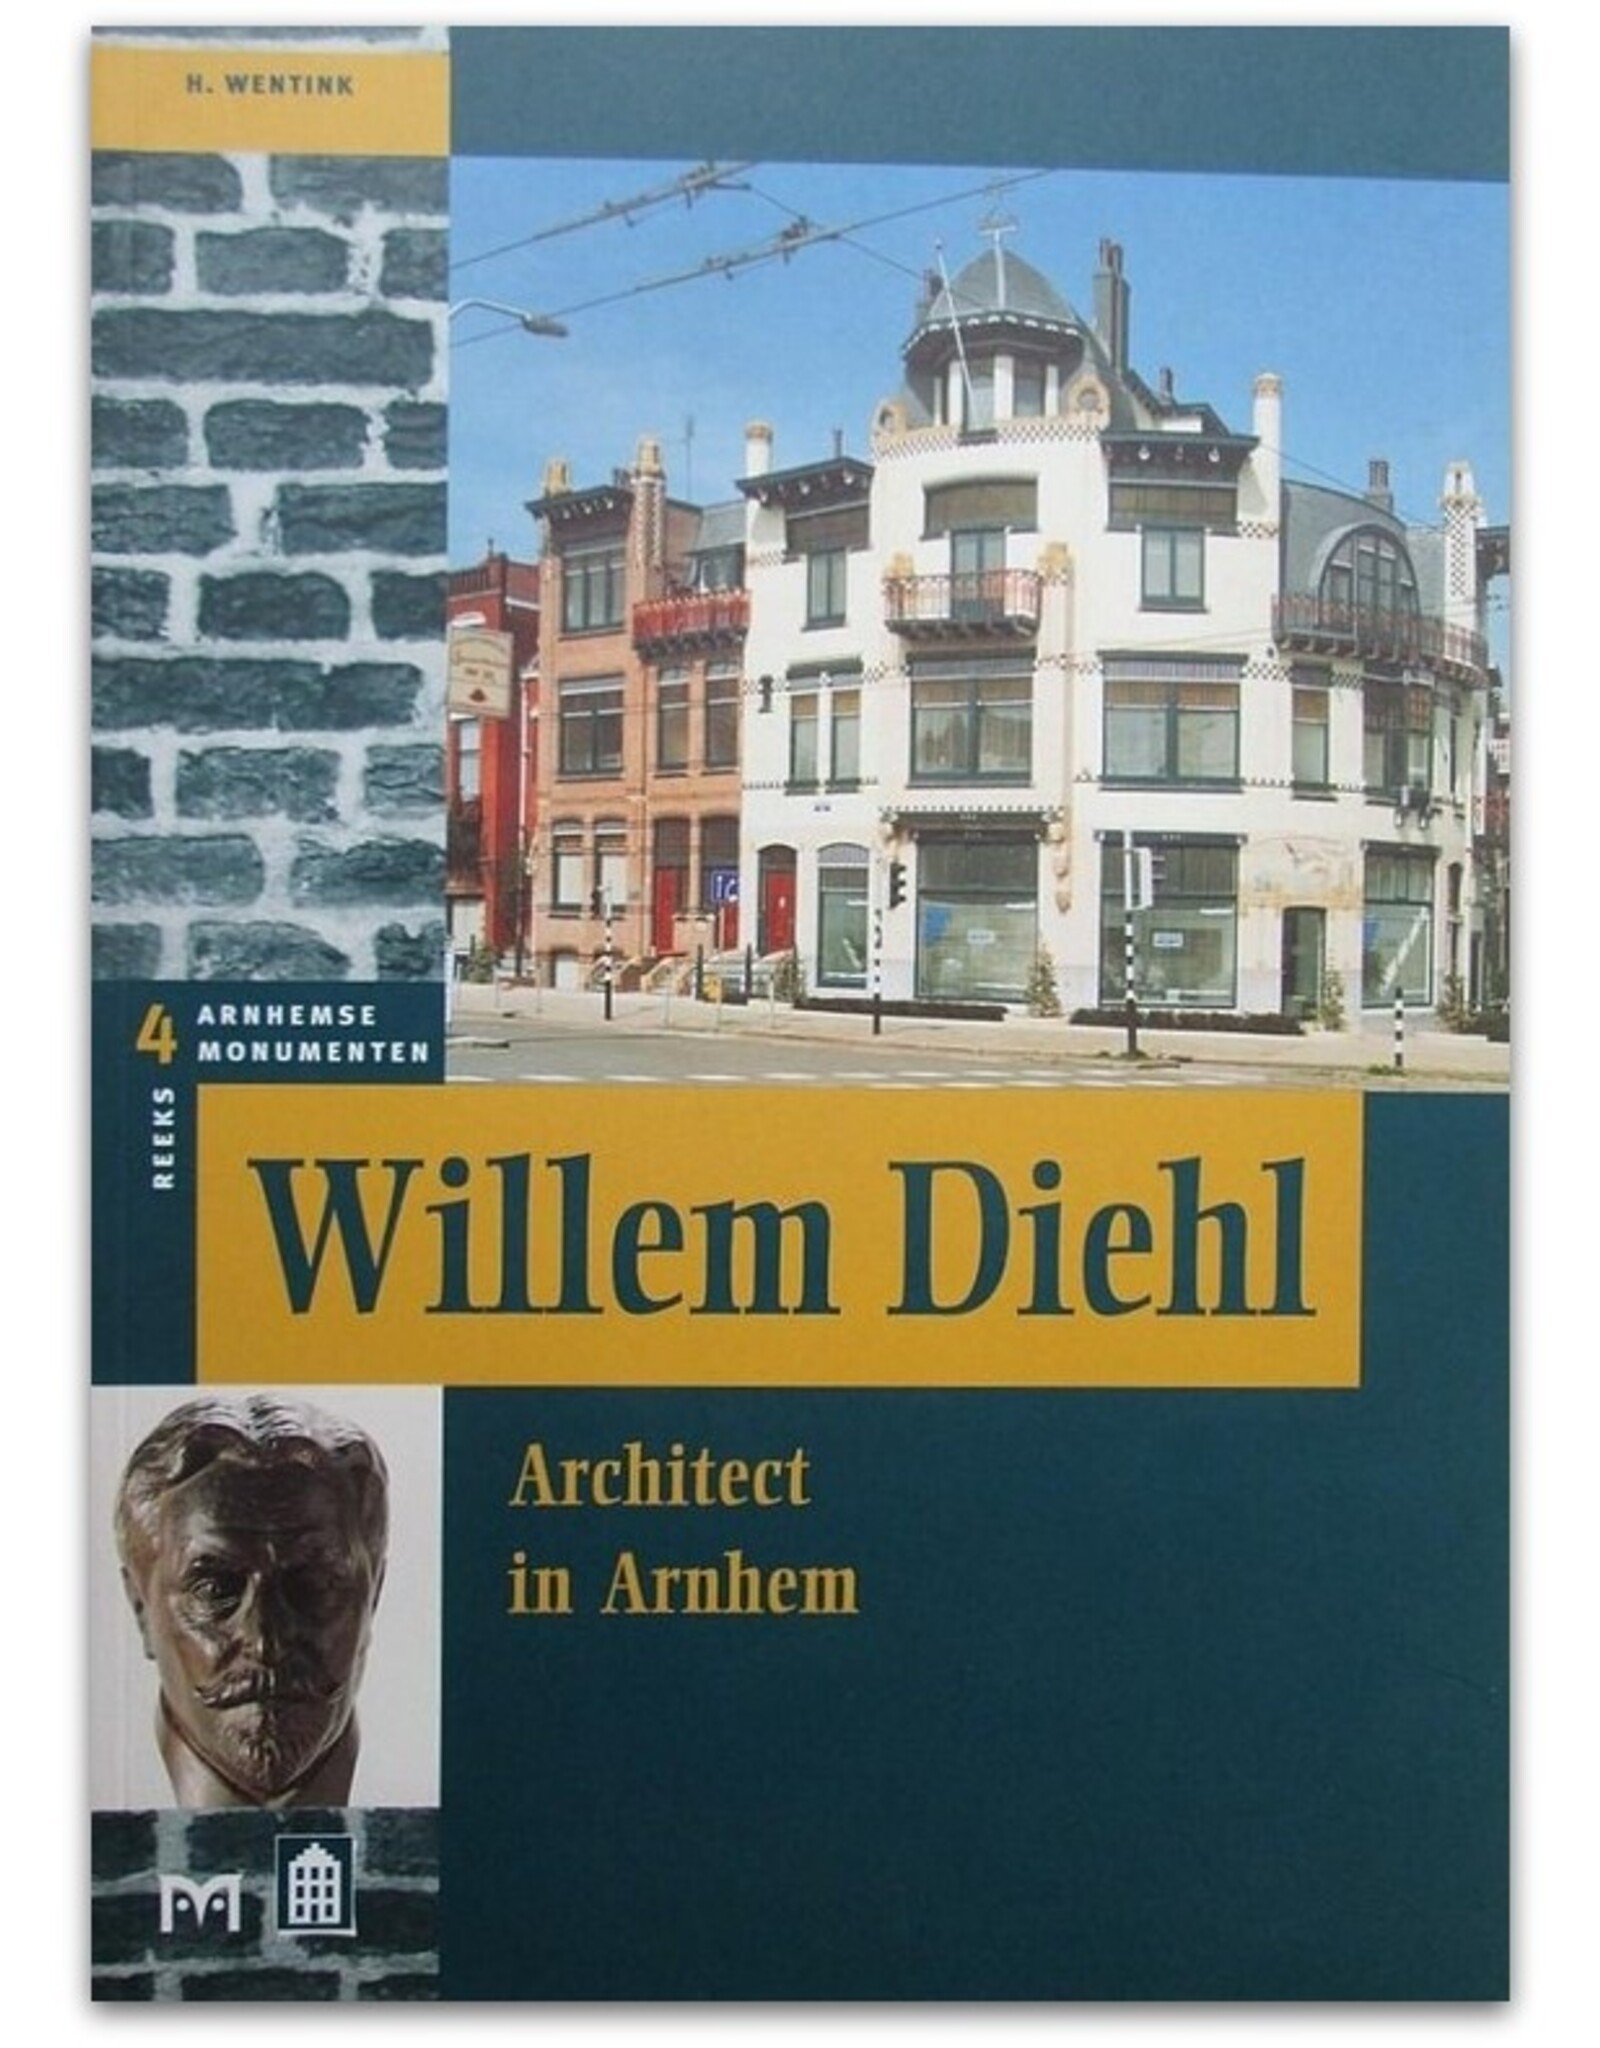 [Matrijs] H. Wentink - Willem Diehl. Architect in Arnhem